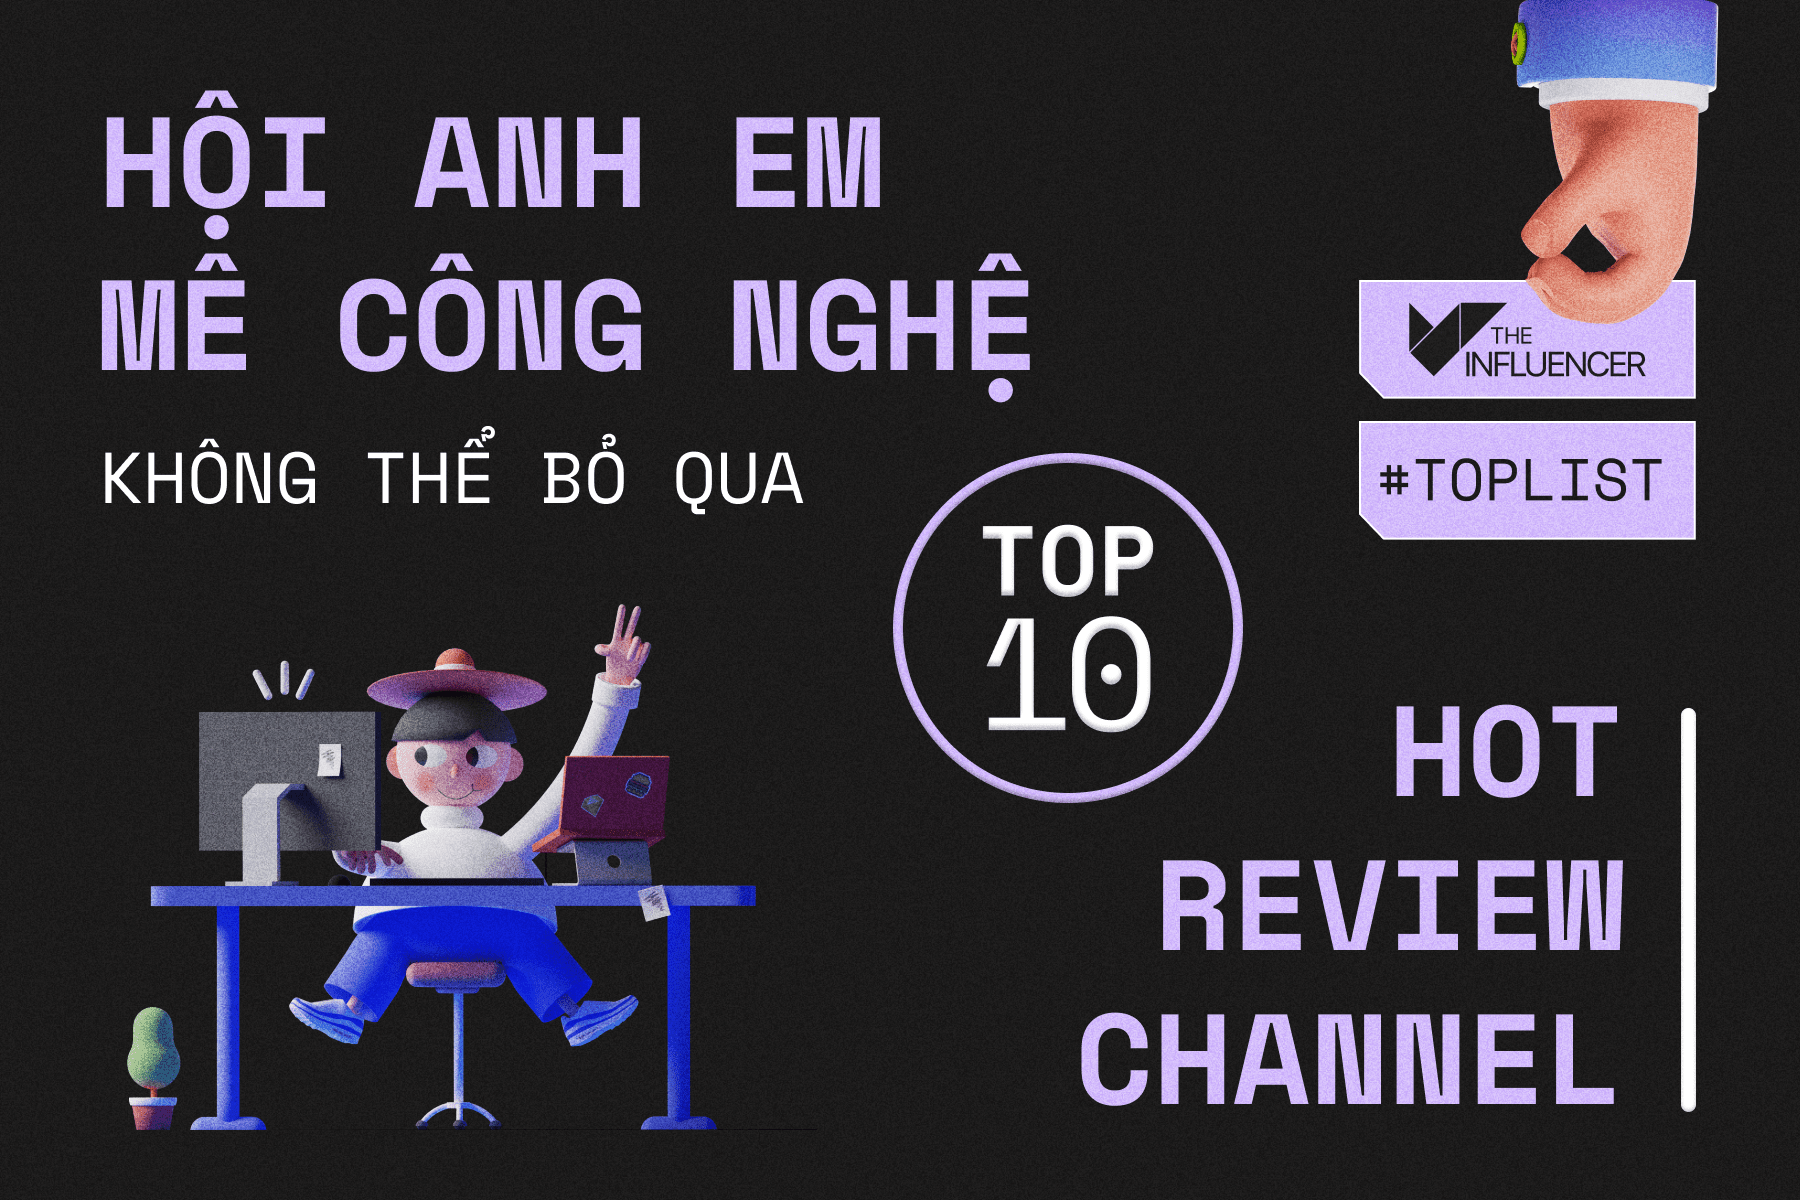 #Toplist: Hội anh em mê công nghệ không thể bỏ qua top 10 hot review channel sau